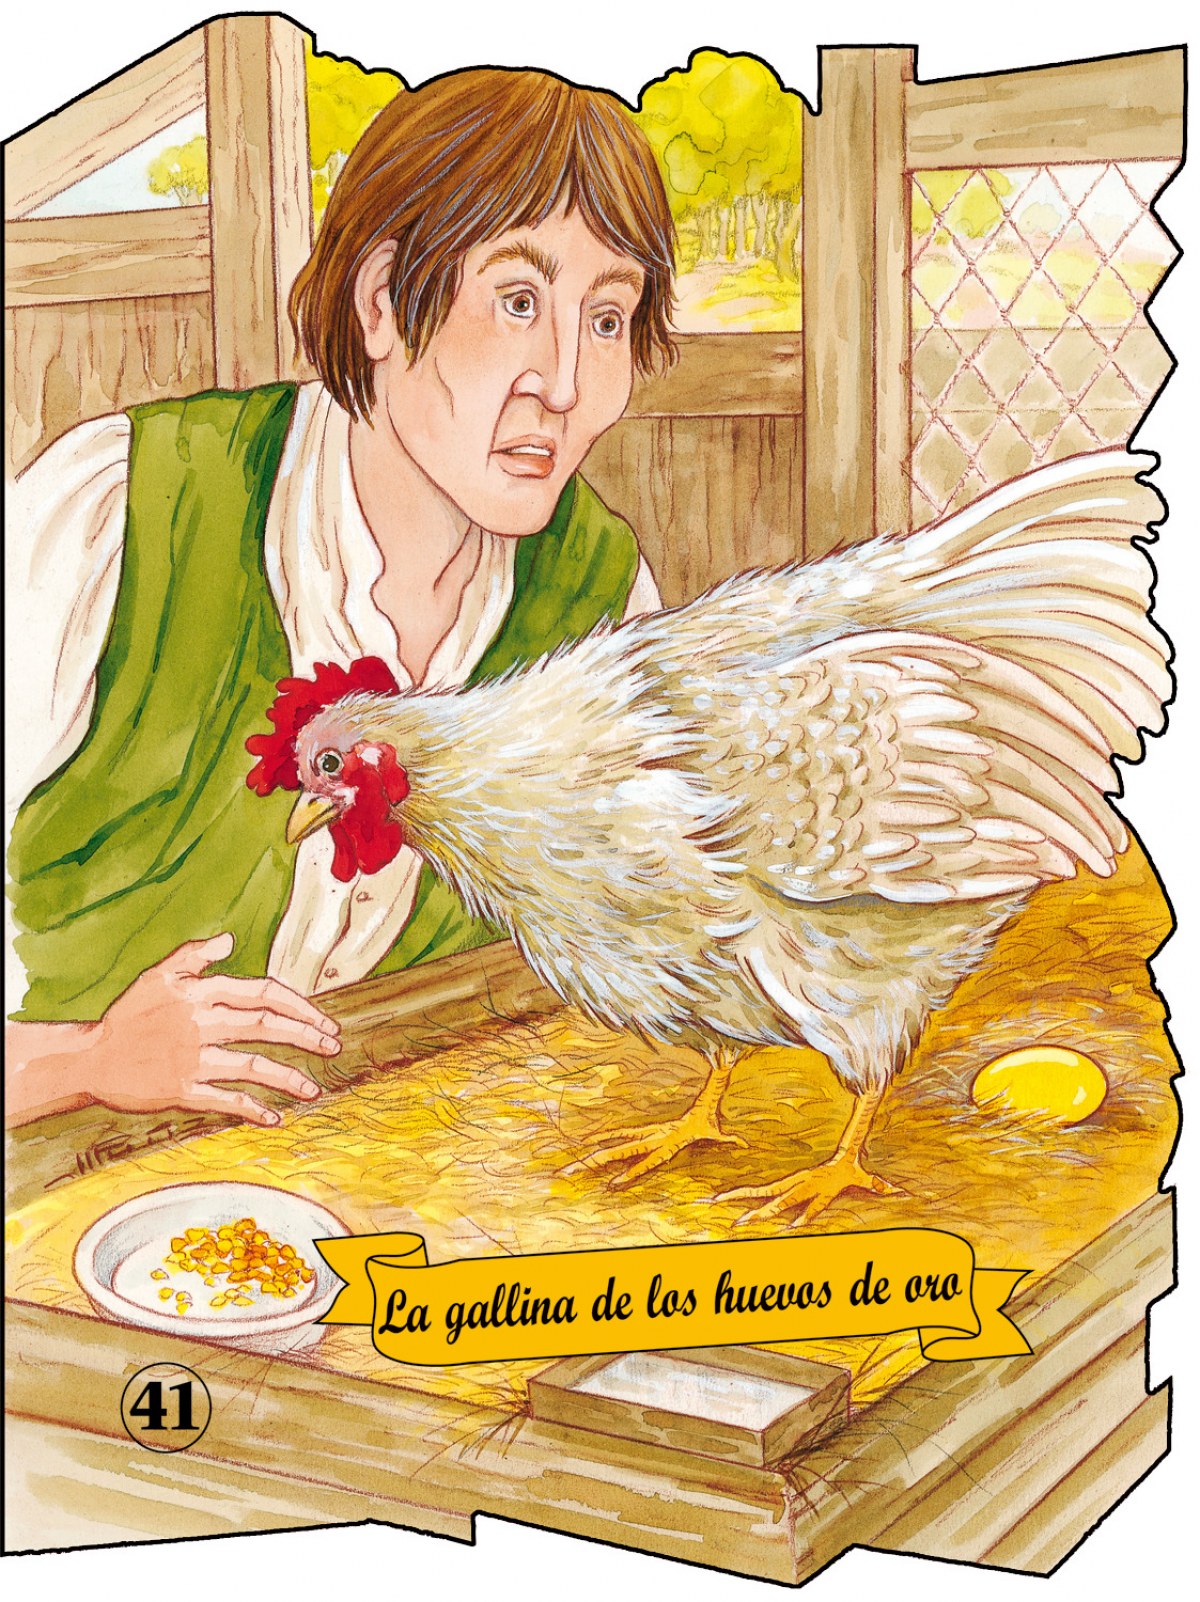 La gallina de los huevos de oro - Samaniego, Félix María